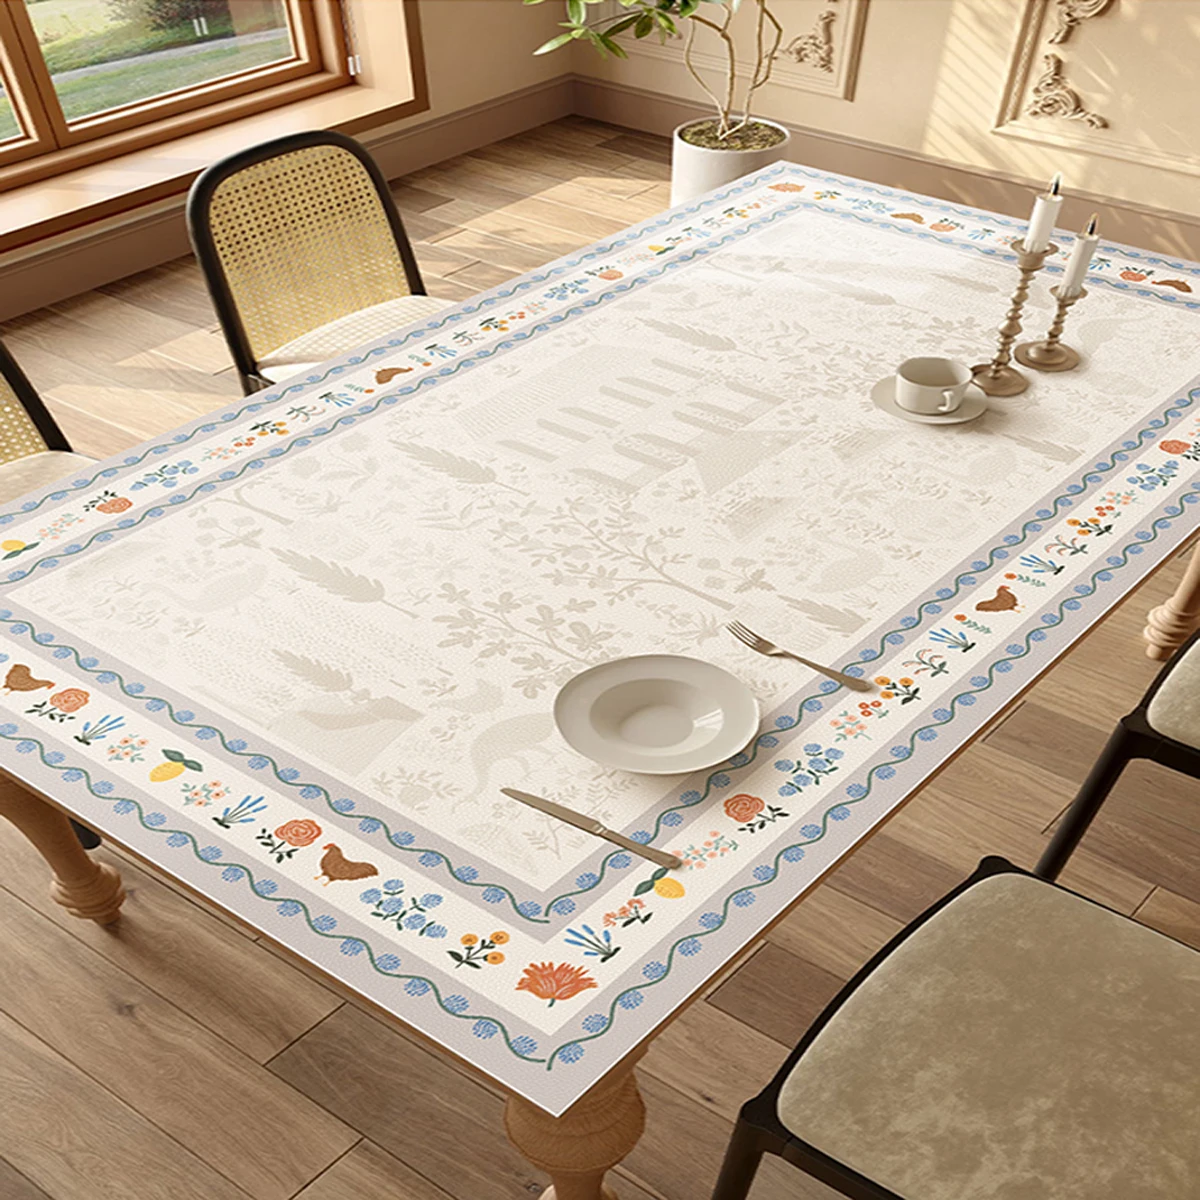 

Cartoon Art Tablecloth Oil-proof Dining Table Mats Waterproof Restaurant Desk Cloth Kitchen Countertop Mat Tapete De Mesa 테이블 매트